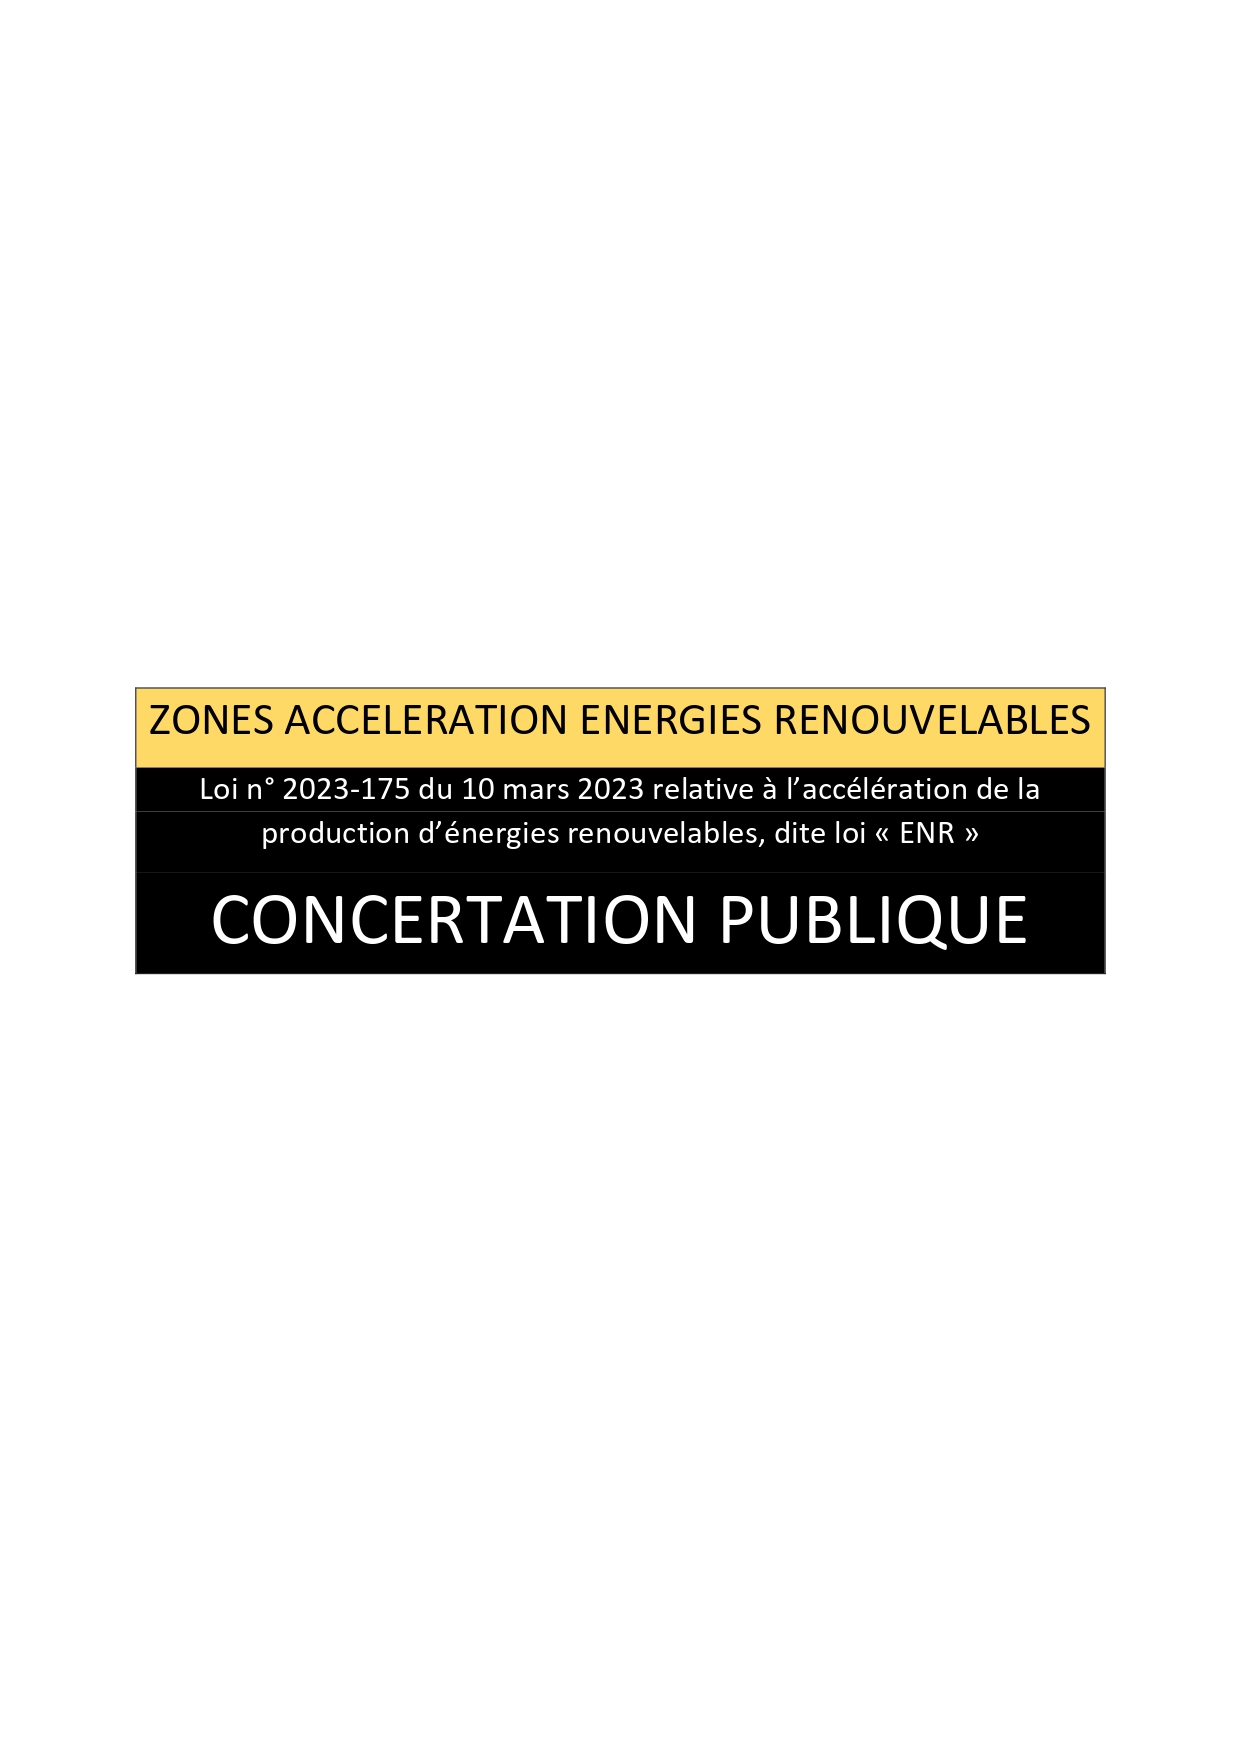 CONCERTATION PUBLIQUE- ZONES ACCELERATION ENERGIES RENOUVELABLES